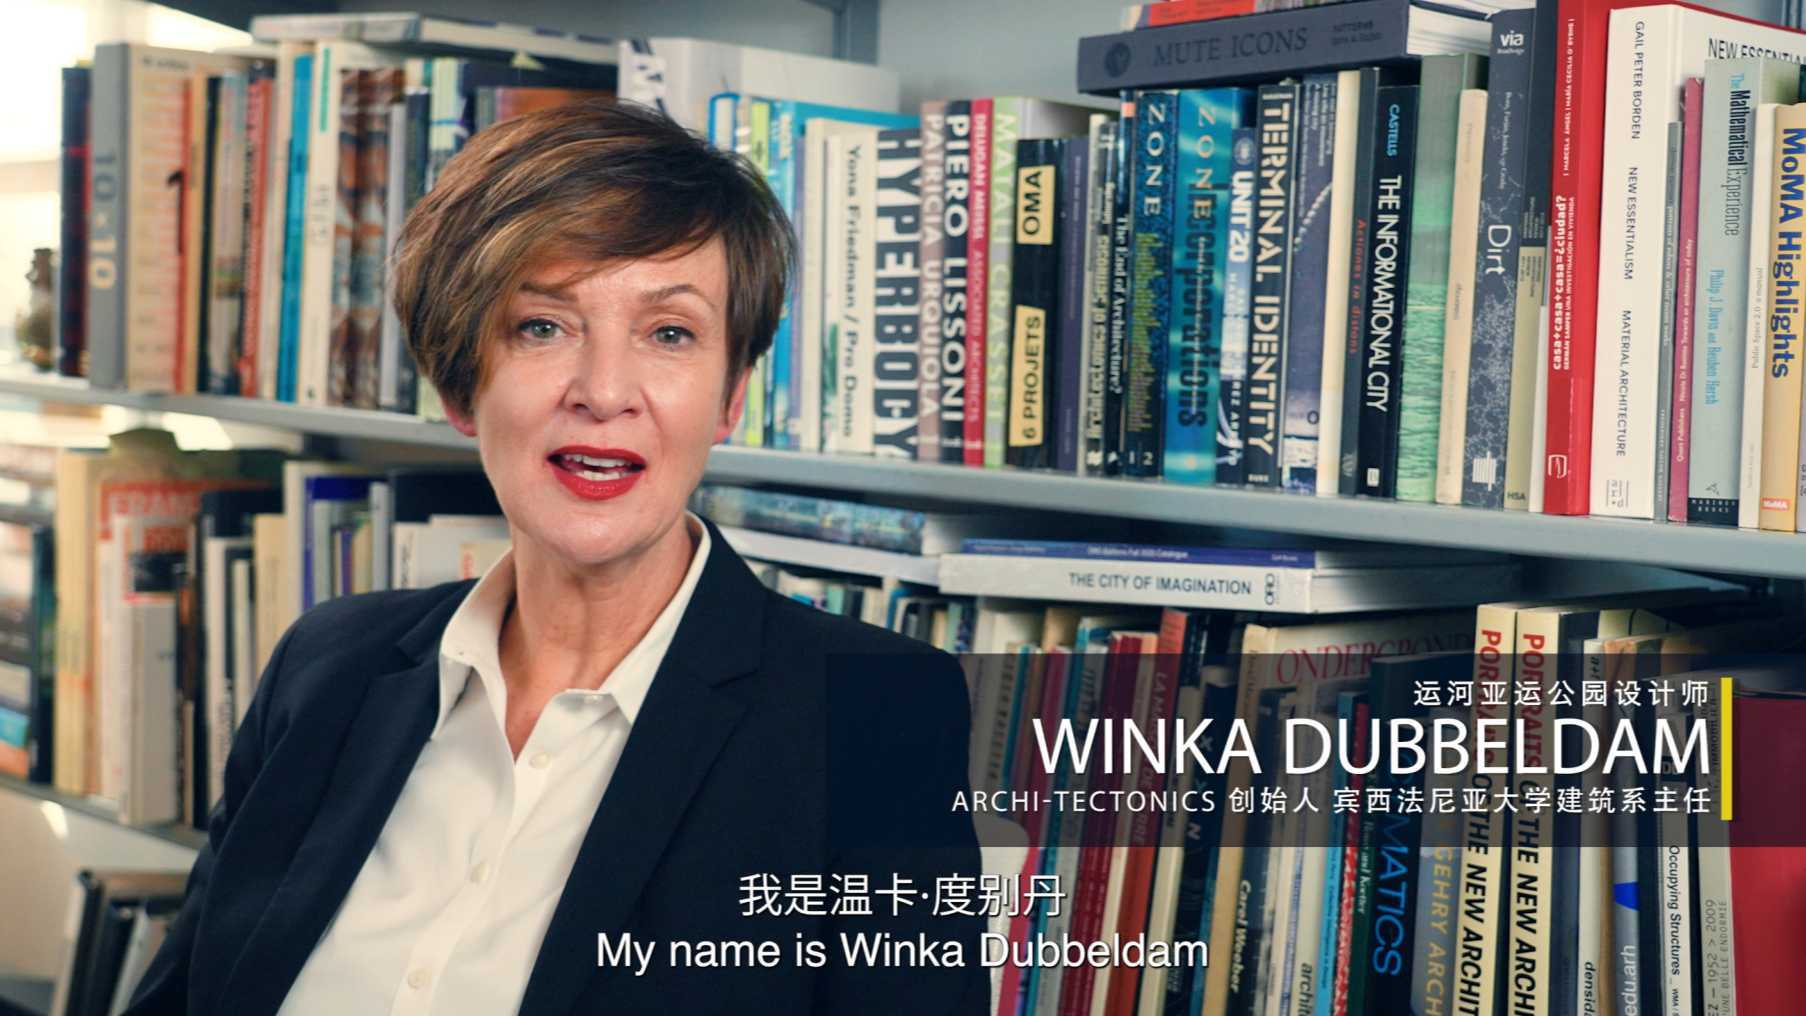 让建筑融入居民生活丨运河亚运公园设计师Winka 纪录片